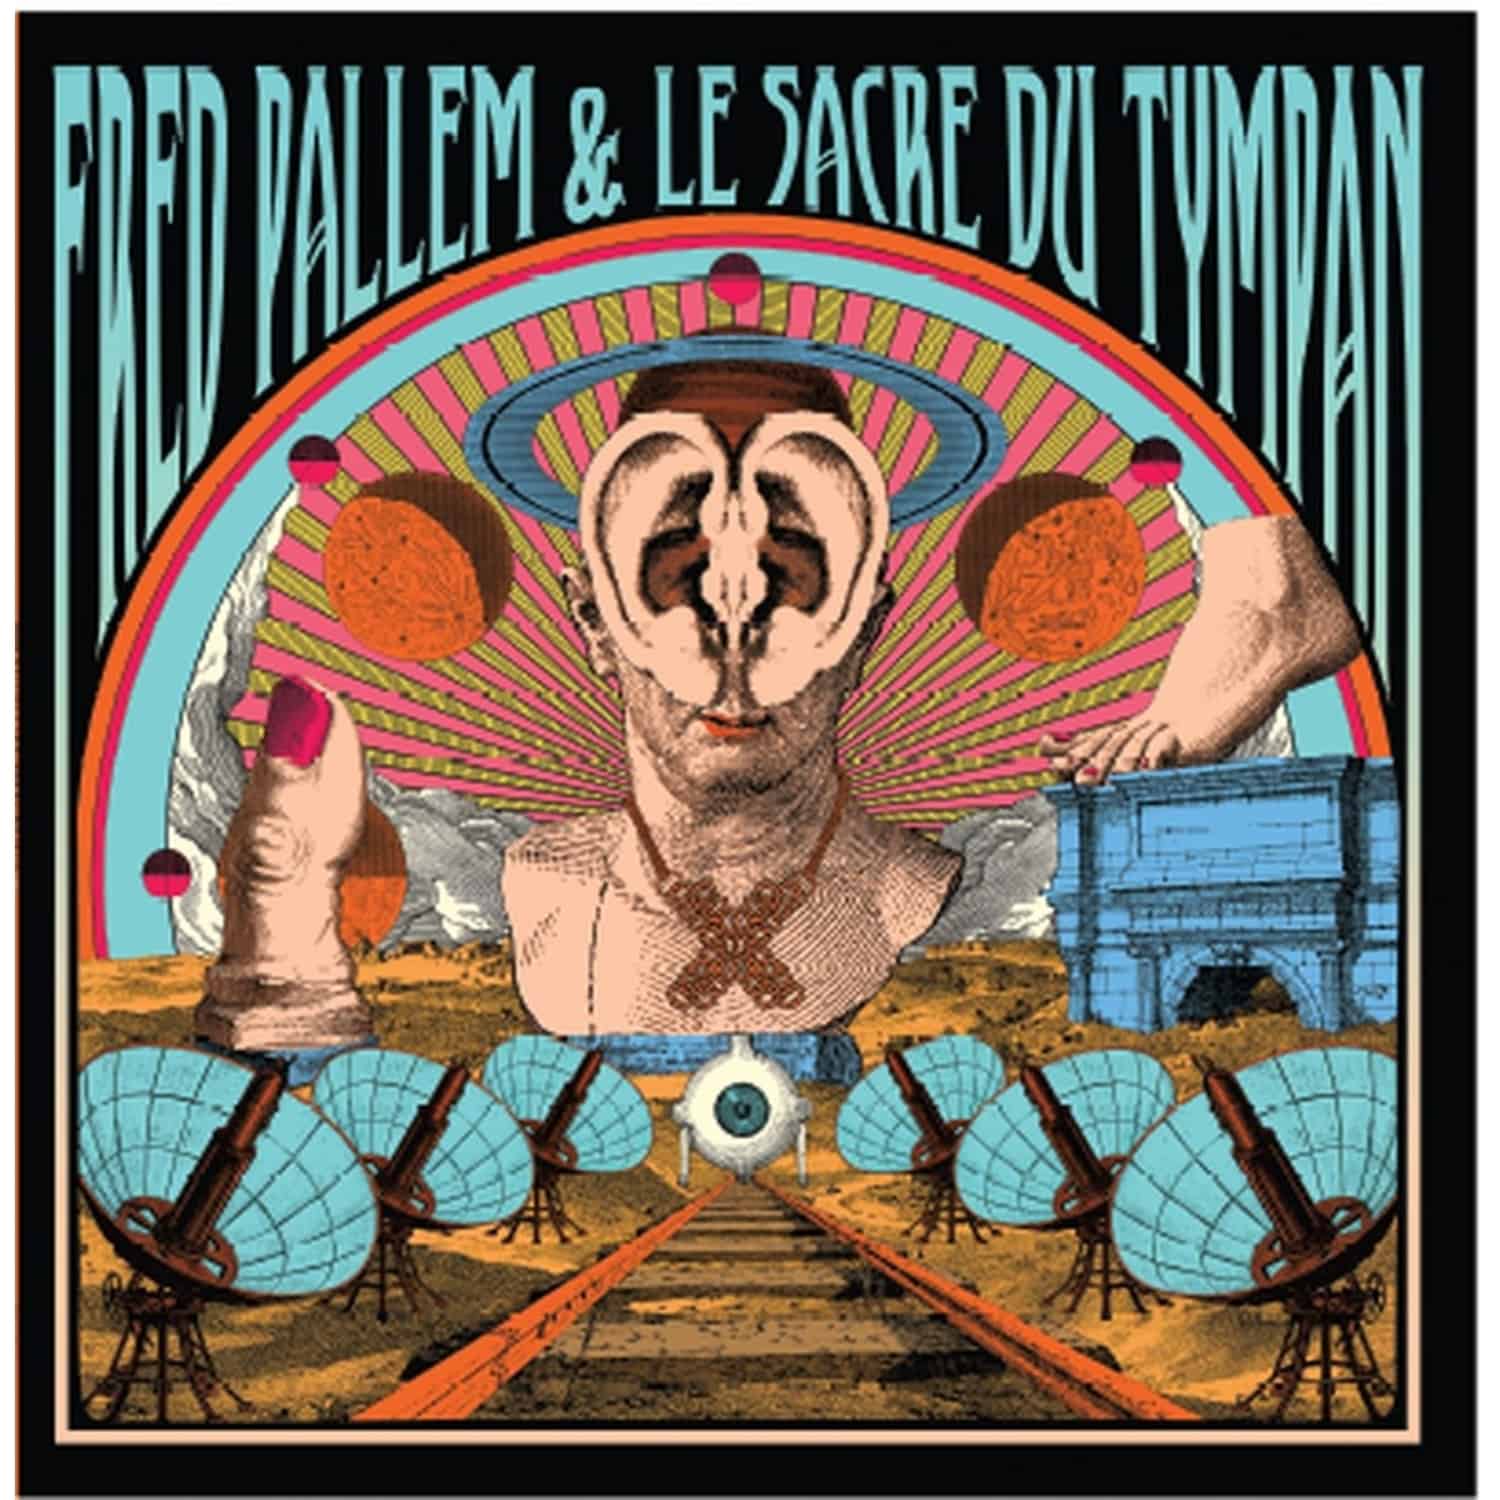  Fred Pallem / Le Sacre Du Tympan - X 